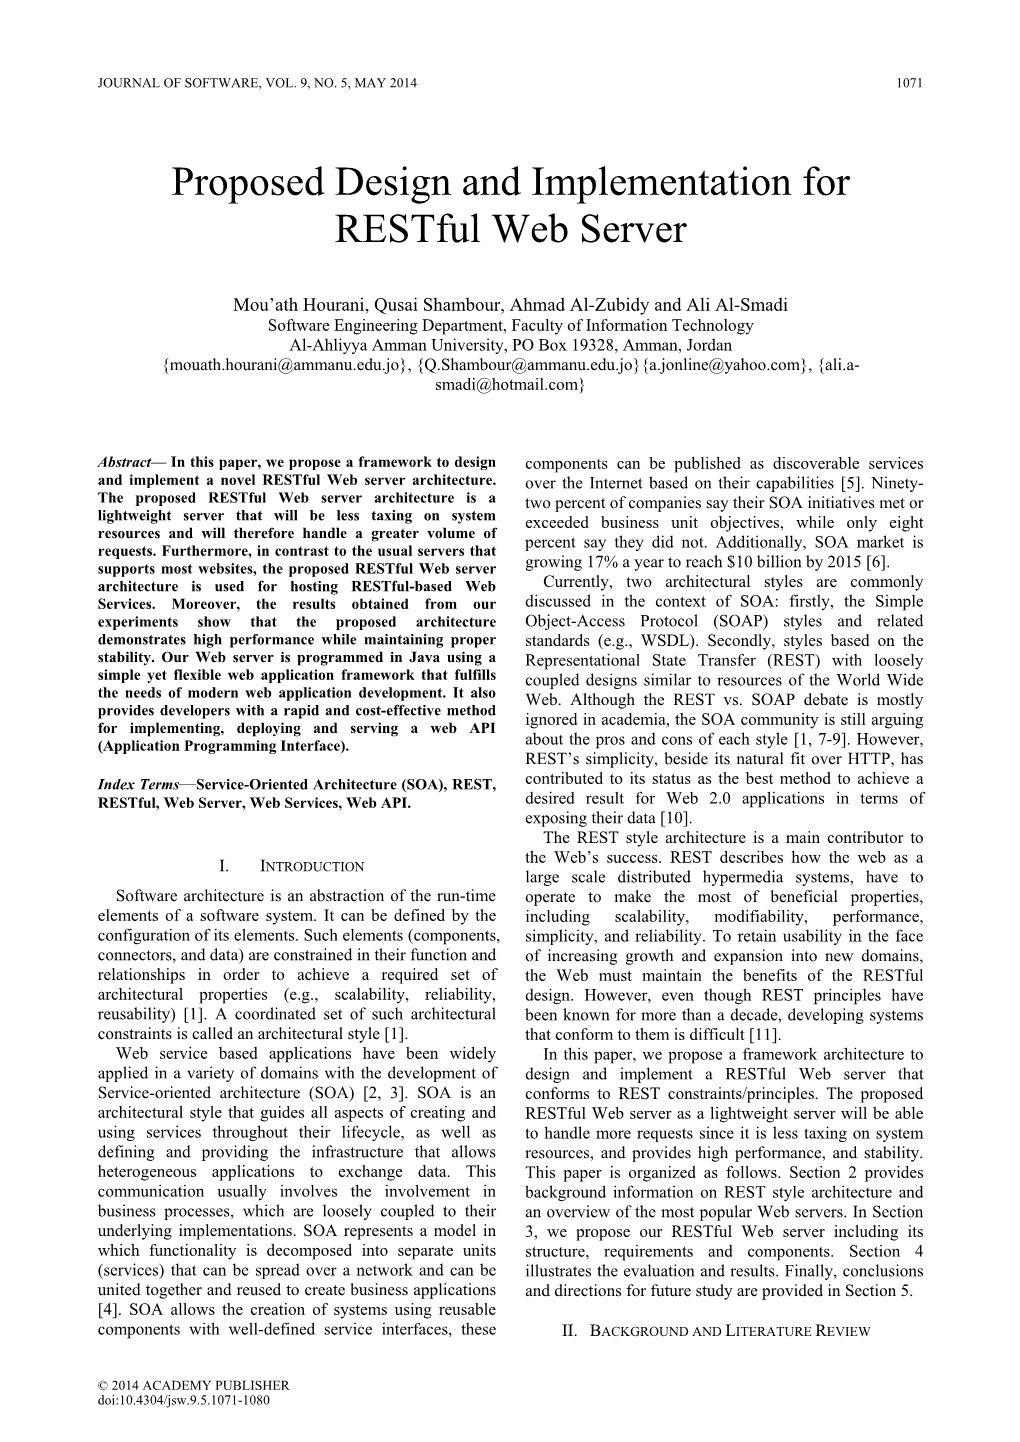 Proposed Design and Implementation for Restful Web Server